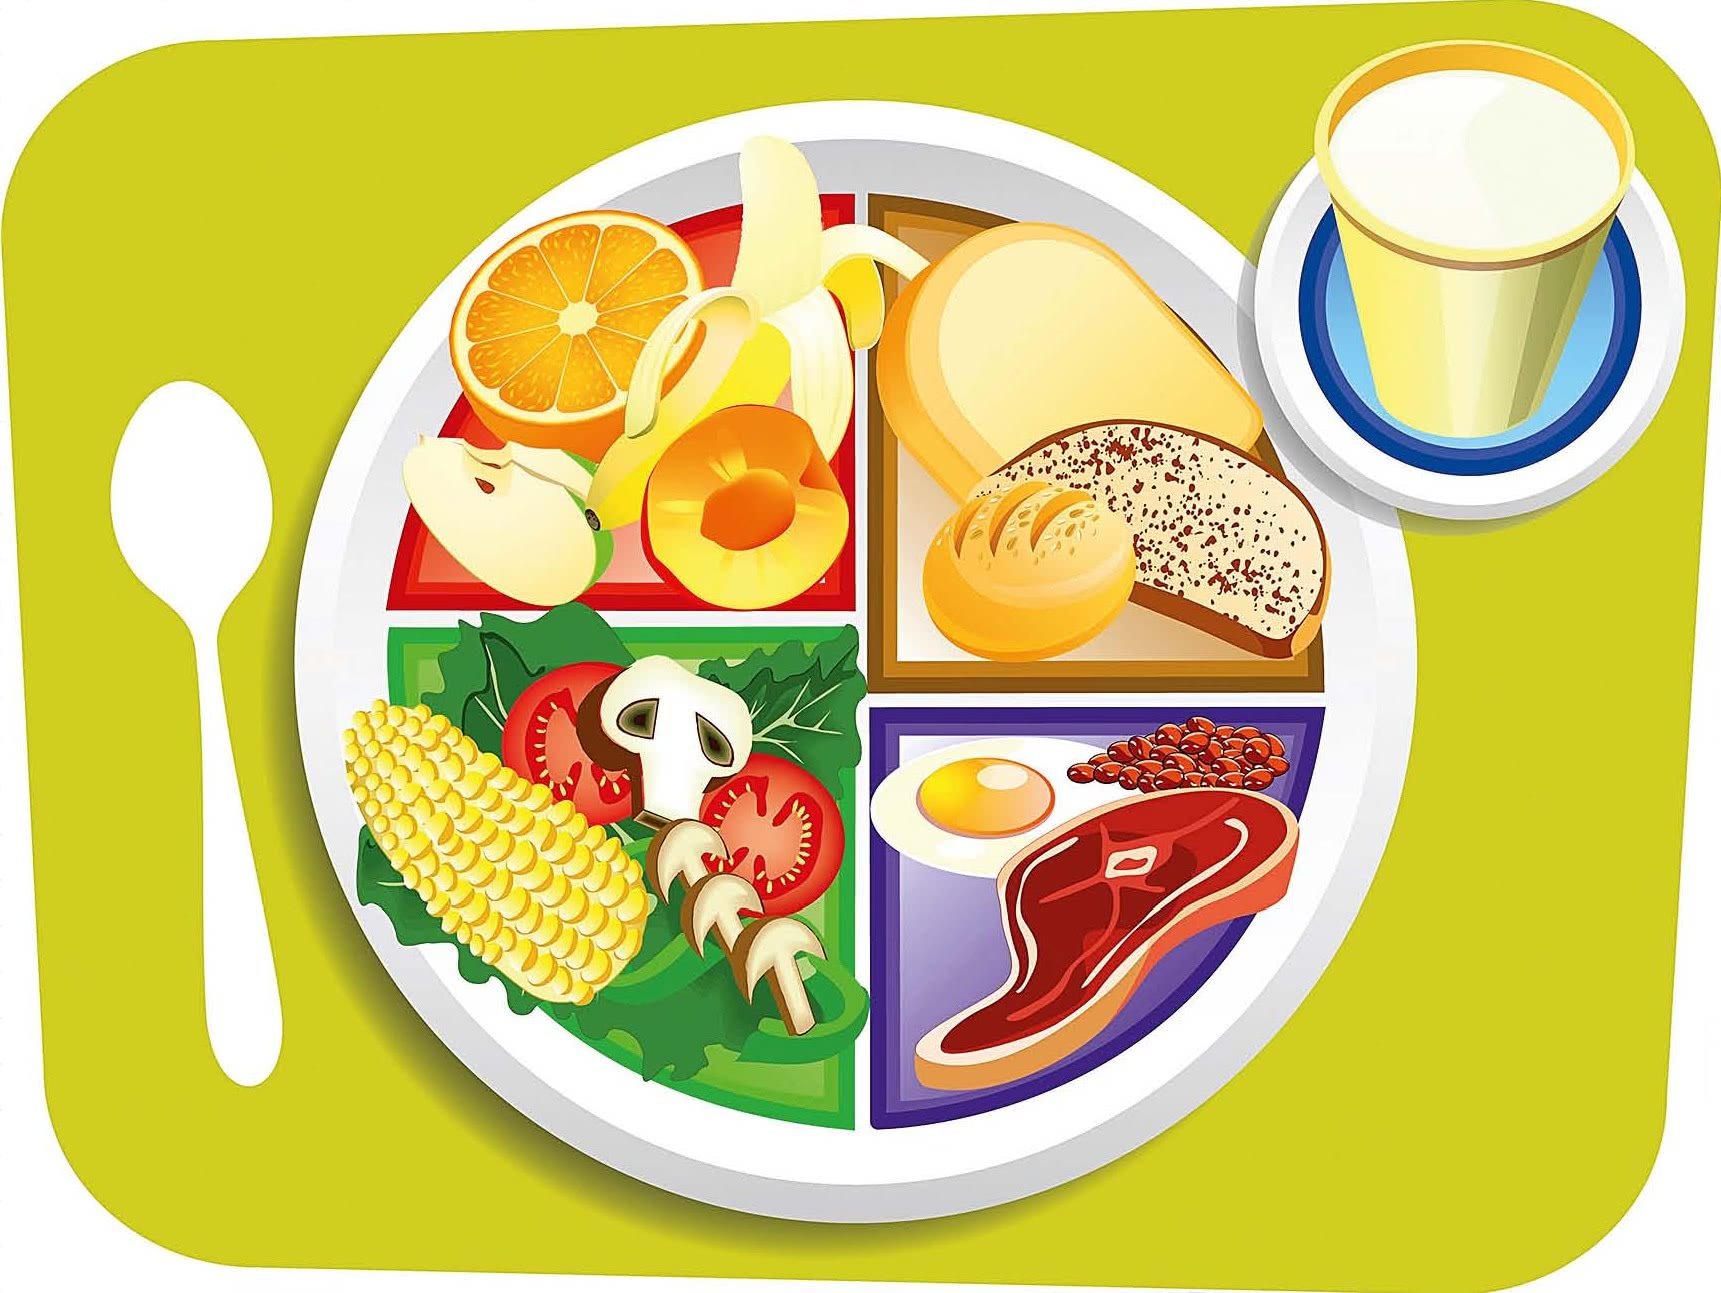 Тарелка здорового питания картинки для детей